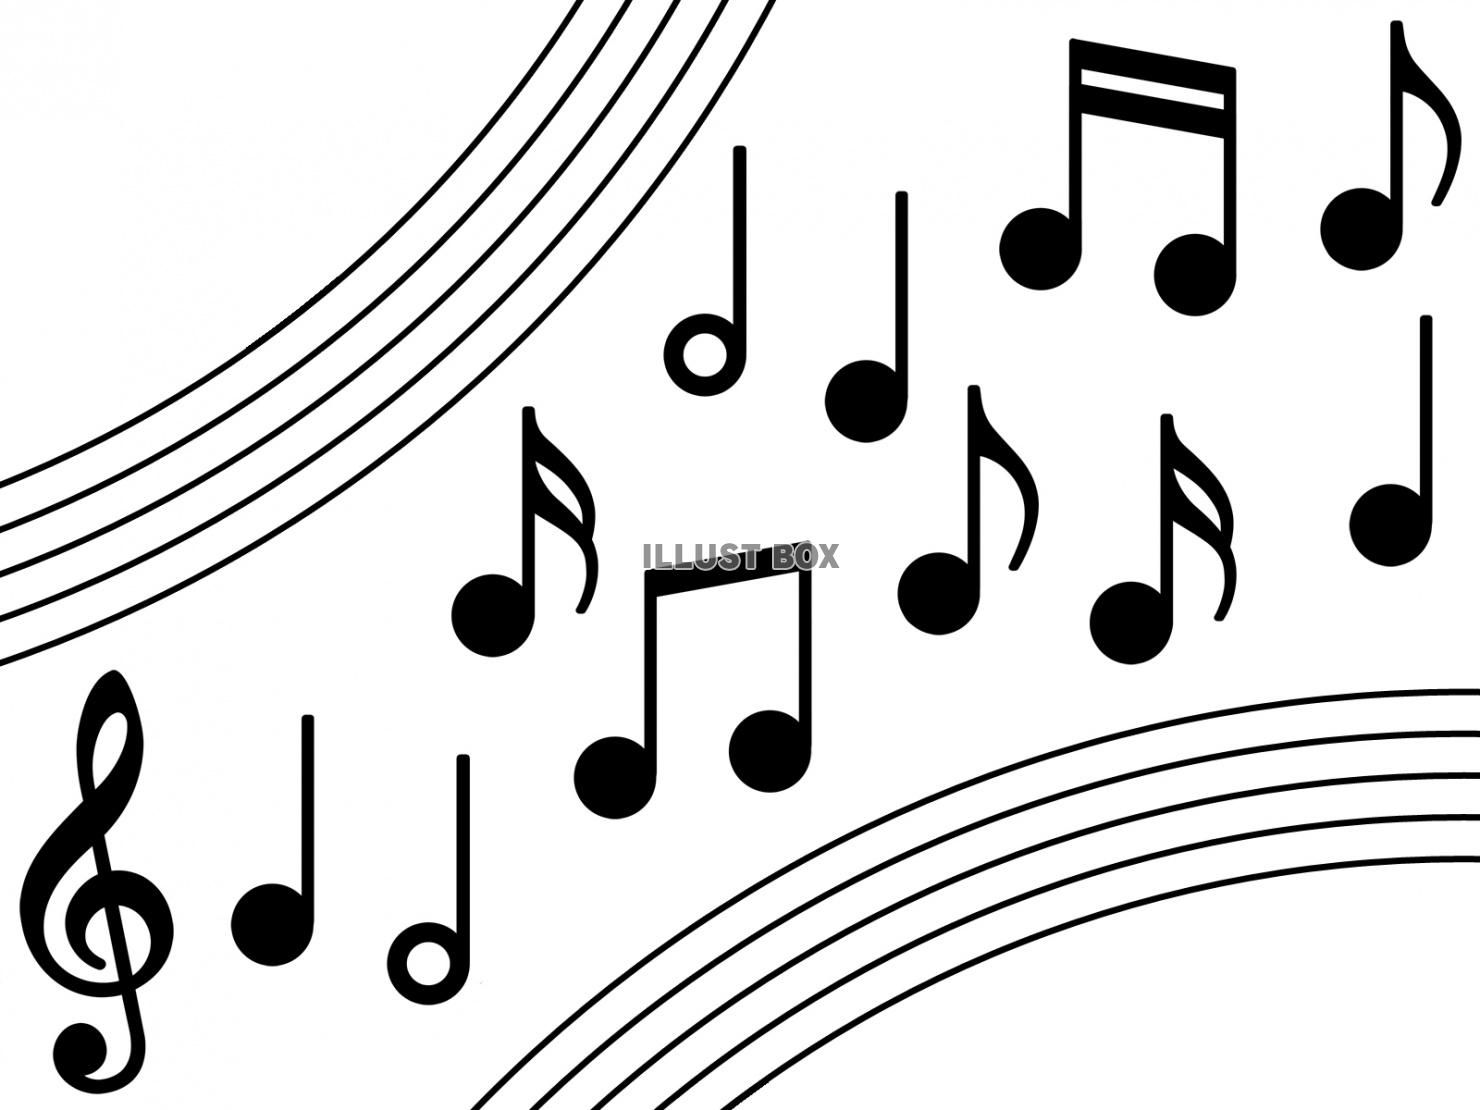 音符と五線譜の音楽画像シルエット背景素材イラスト